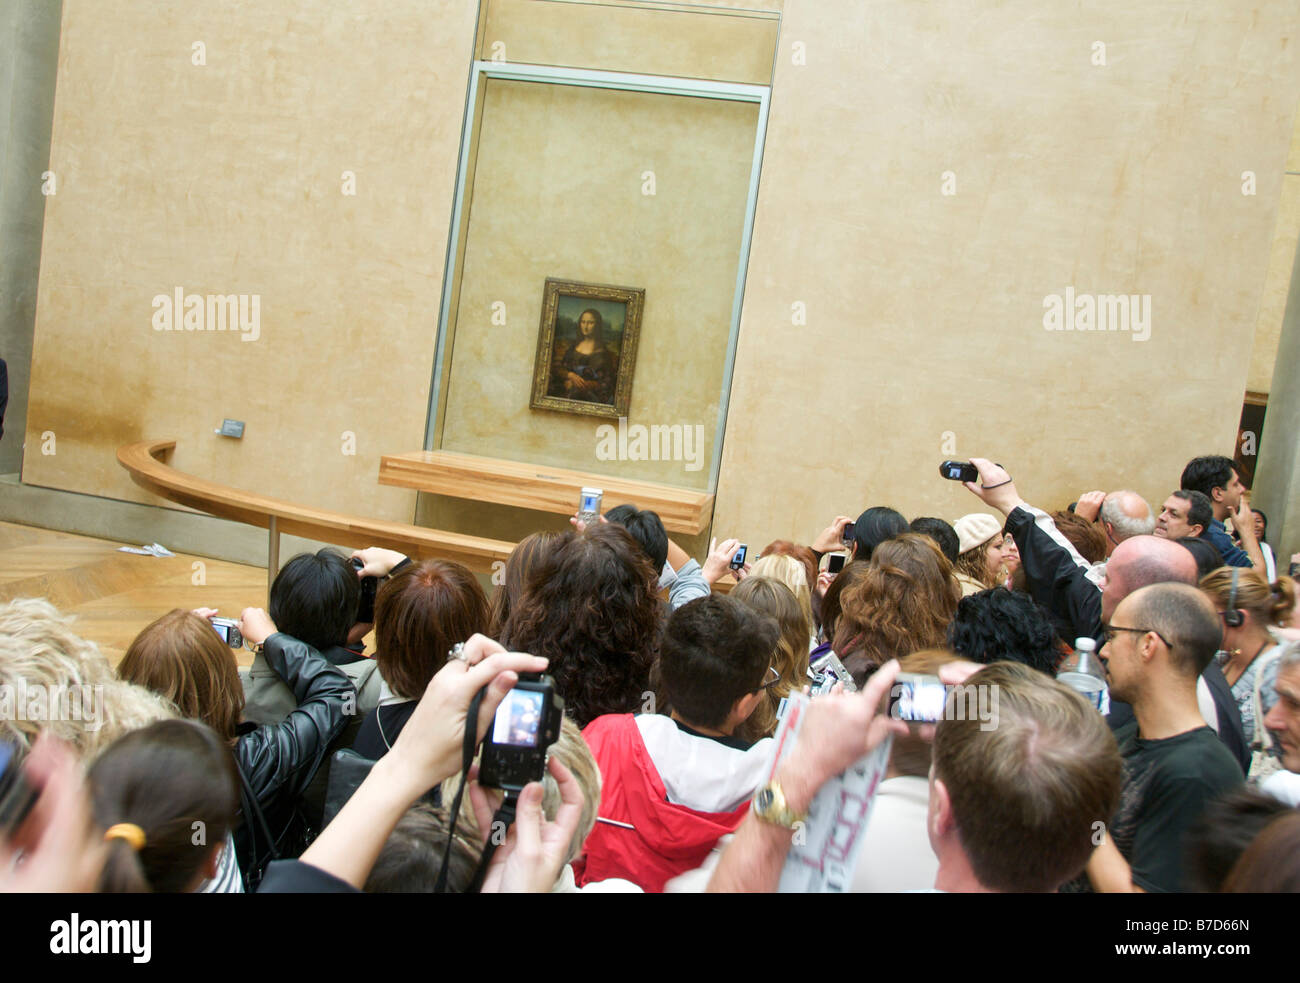 Foule de touristes à prendre des photos de la Mona Lisa, le Louvre, Paris, France, Europe Banque D'Images